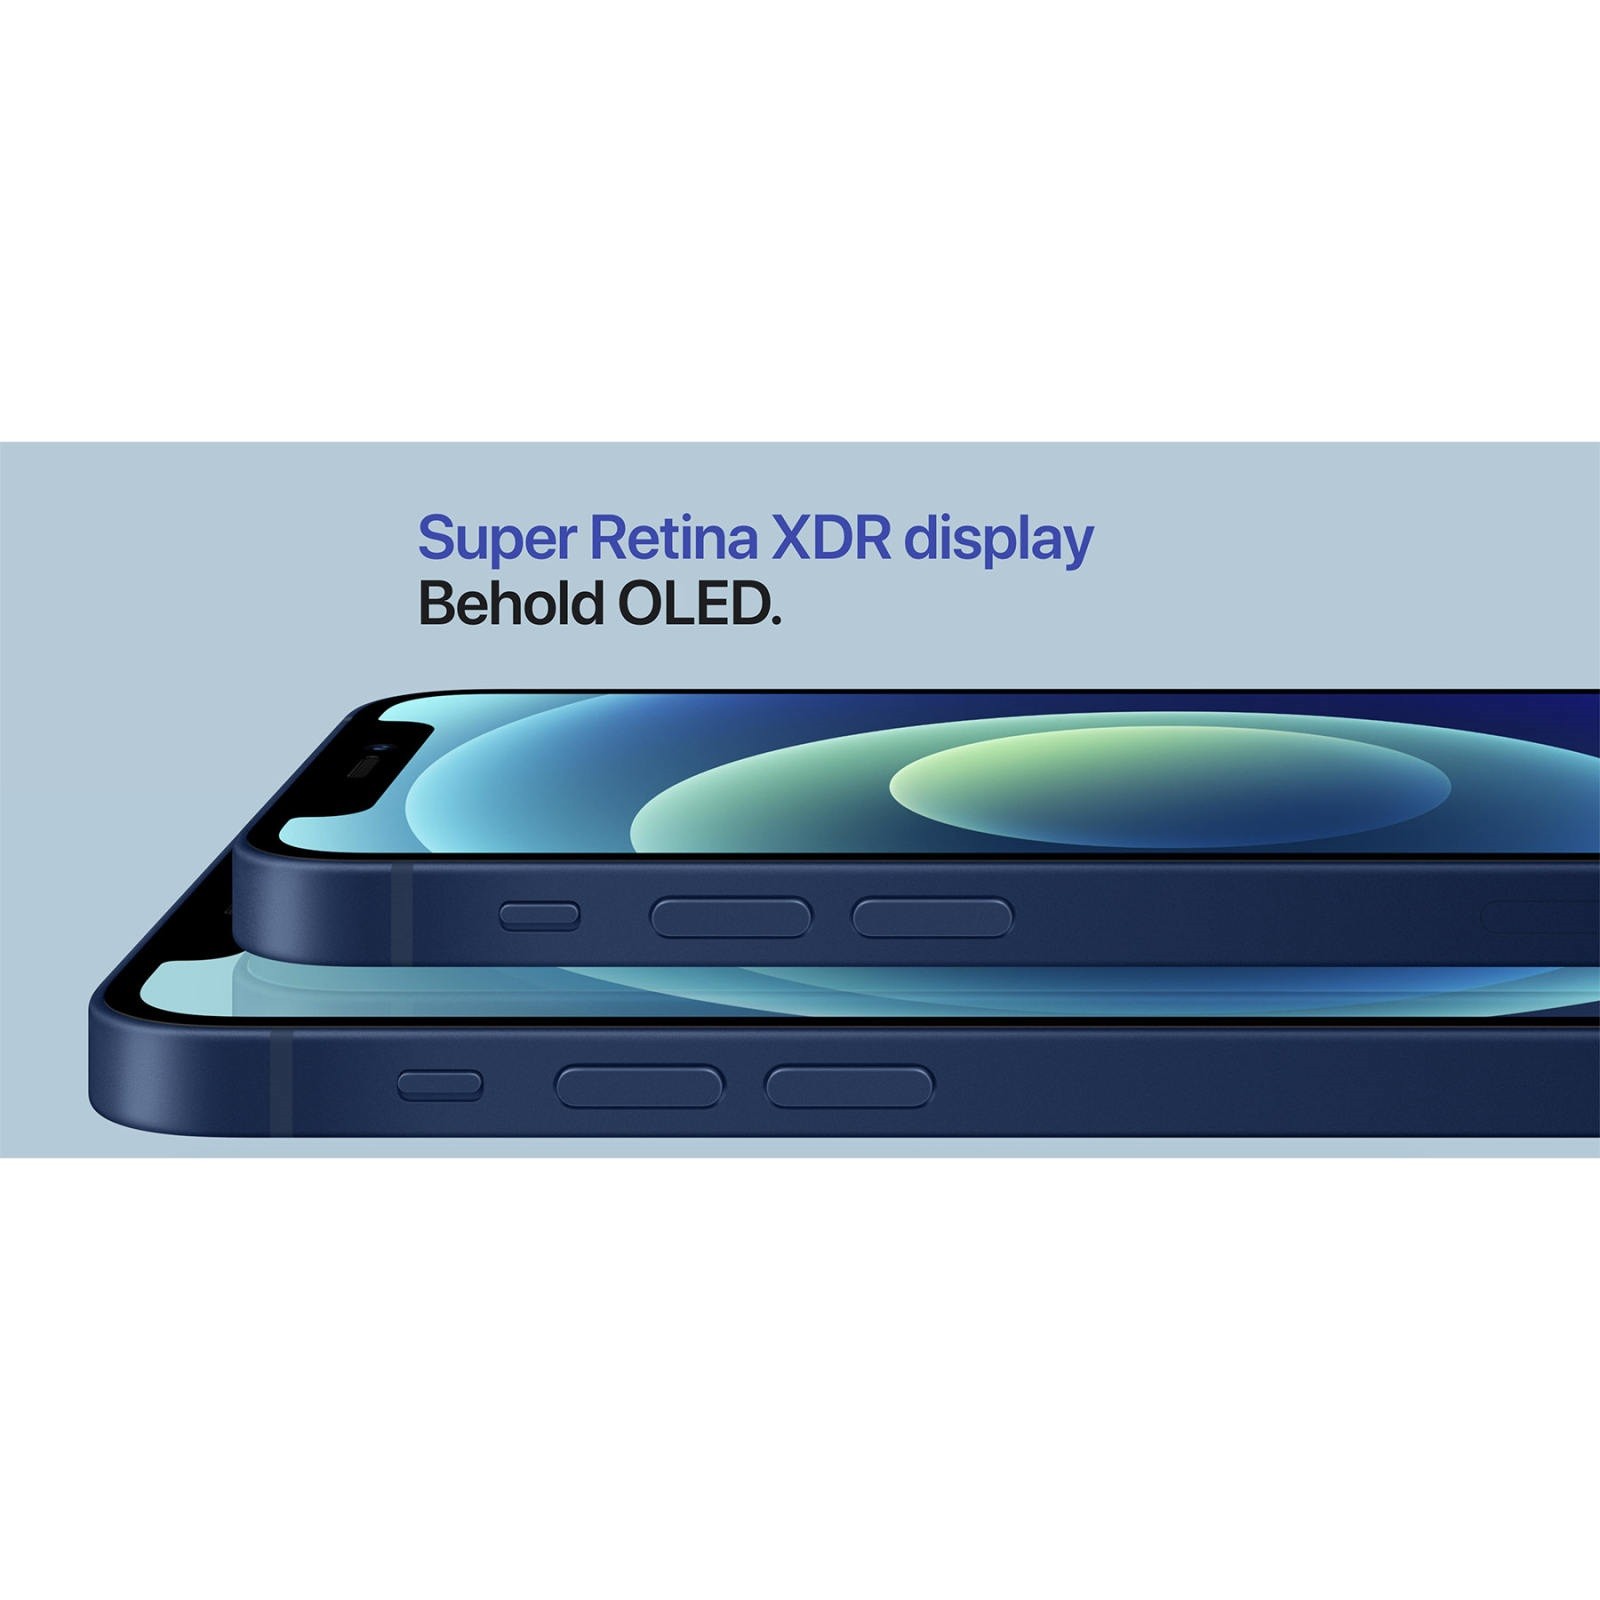 گوشی موبایل اپل مدل iPhone 12 zaa دو سیم‌ کارت ظرفیت 128 گیگابایت